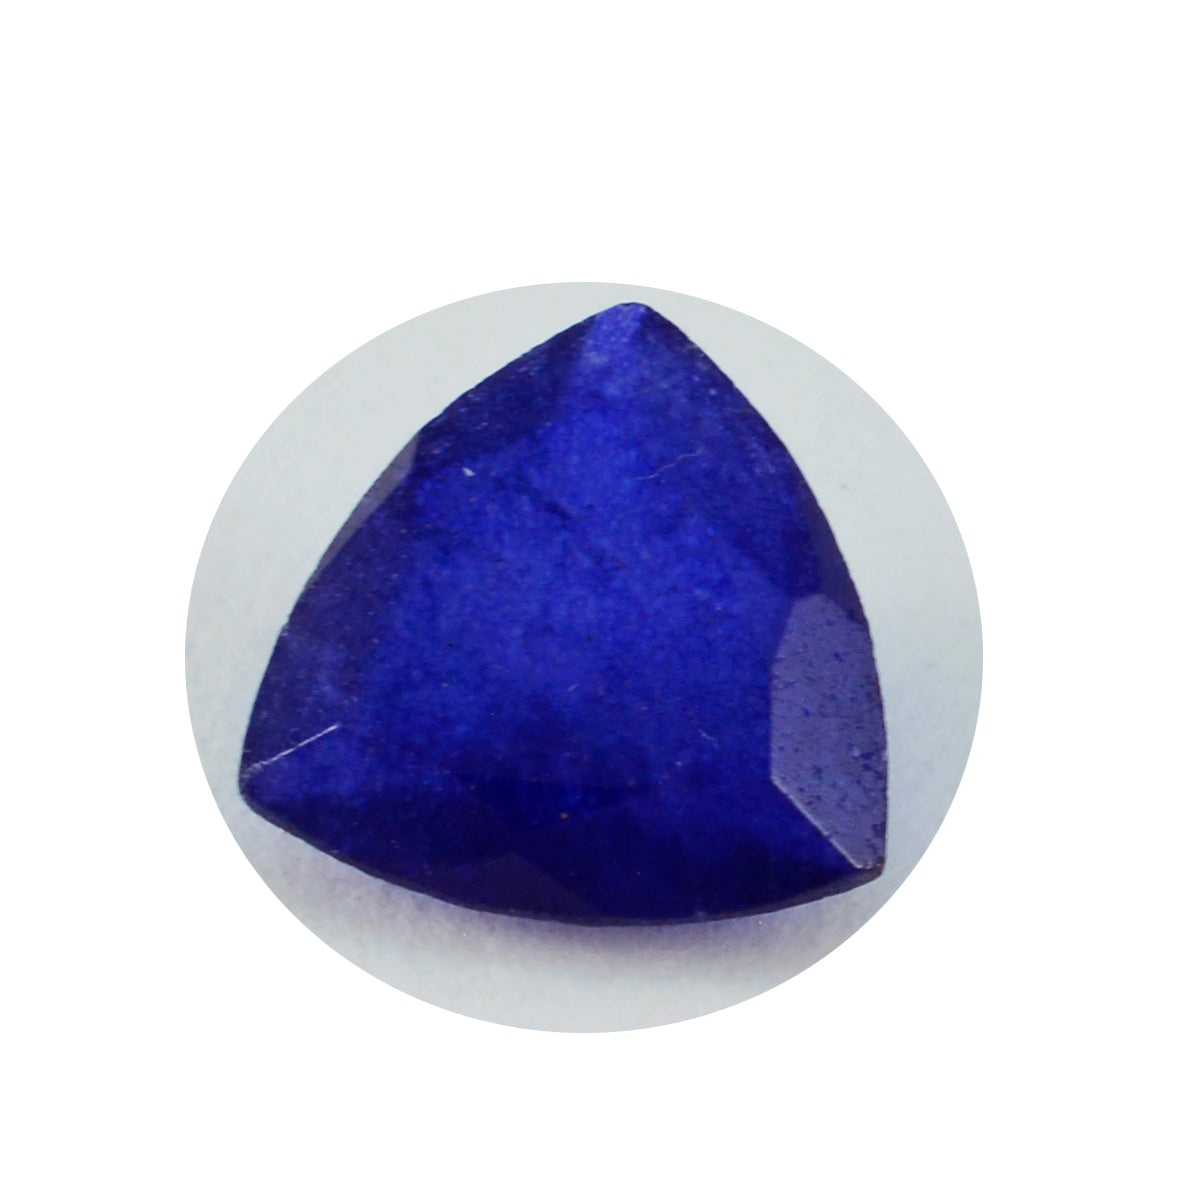 Riyogems 1 pièce de jaspe bleu véritable à facettes 13x13mm en forme de trillion pierre précieuse de qualité merveilleuse